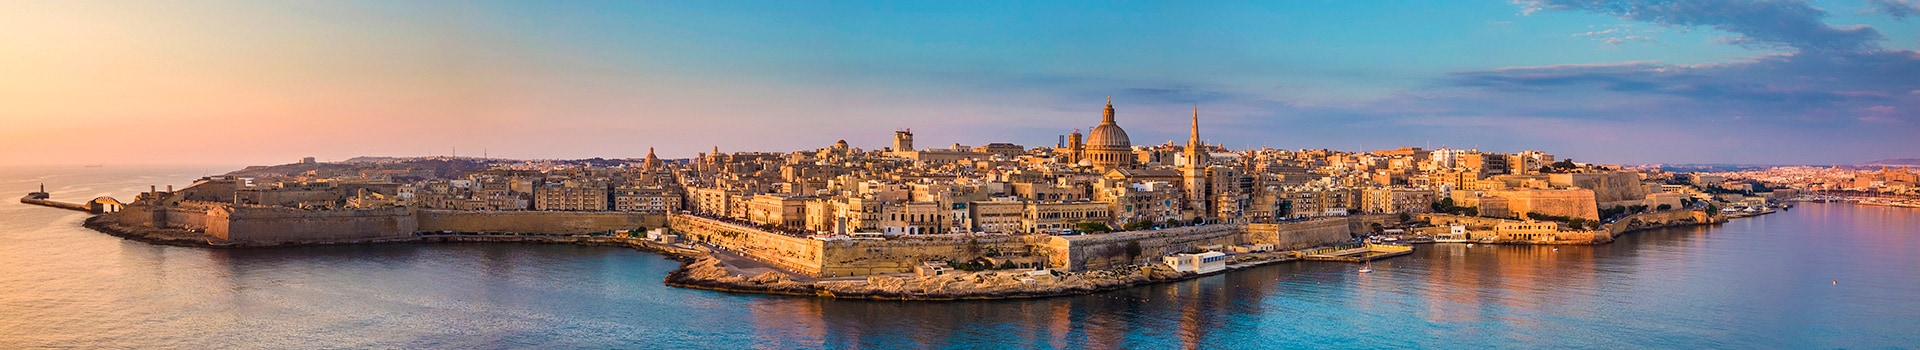 Munique - Malta